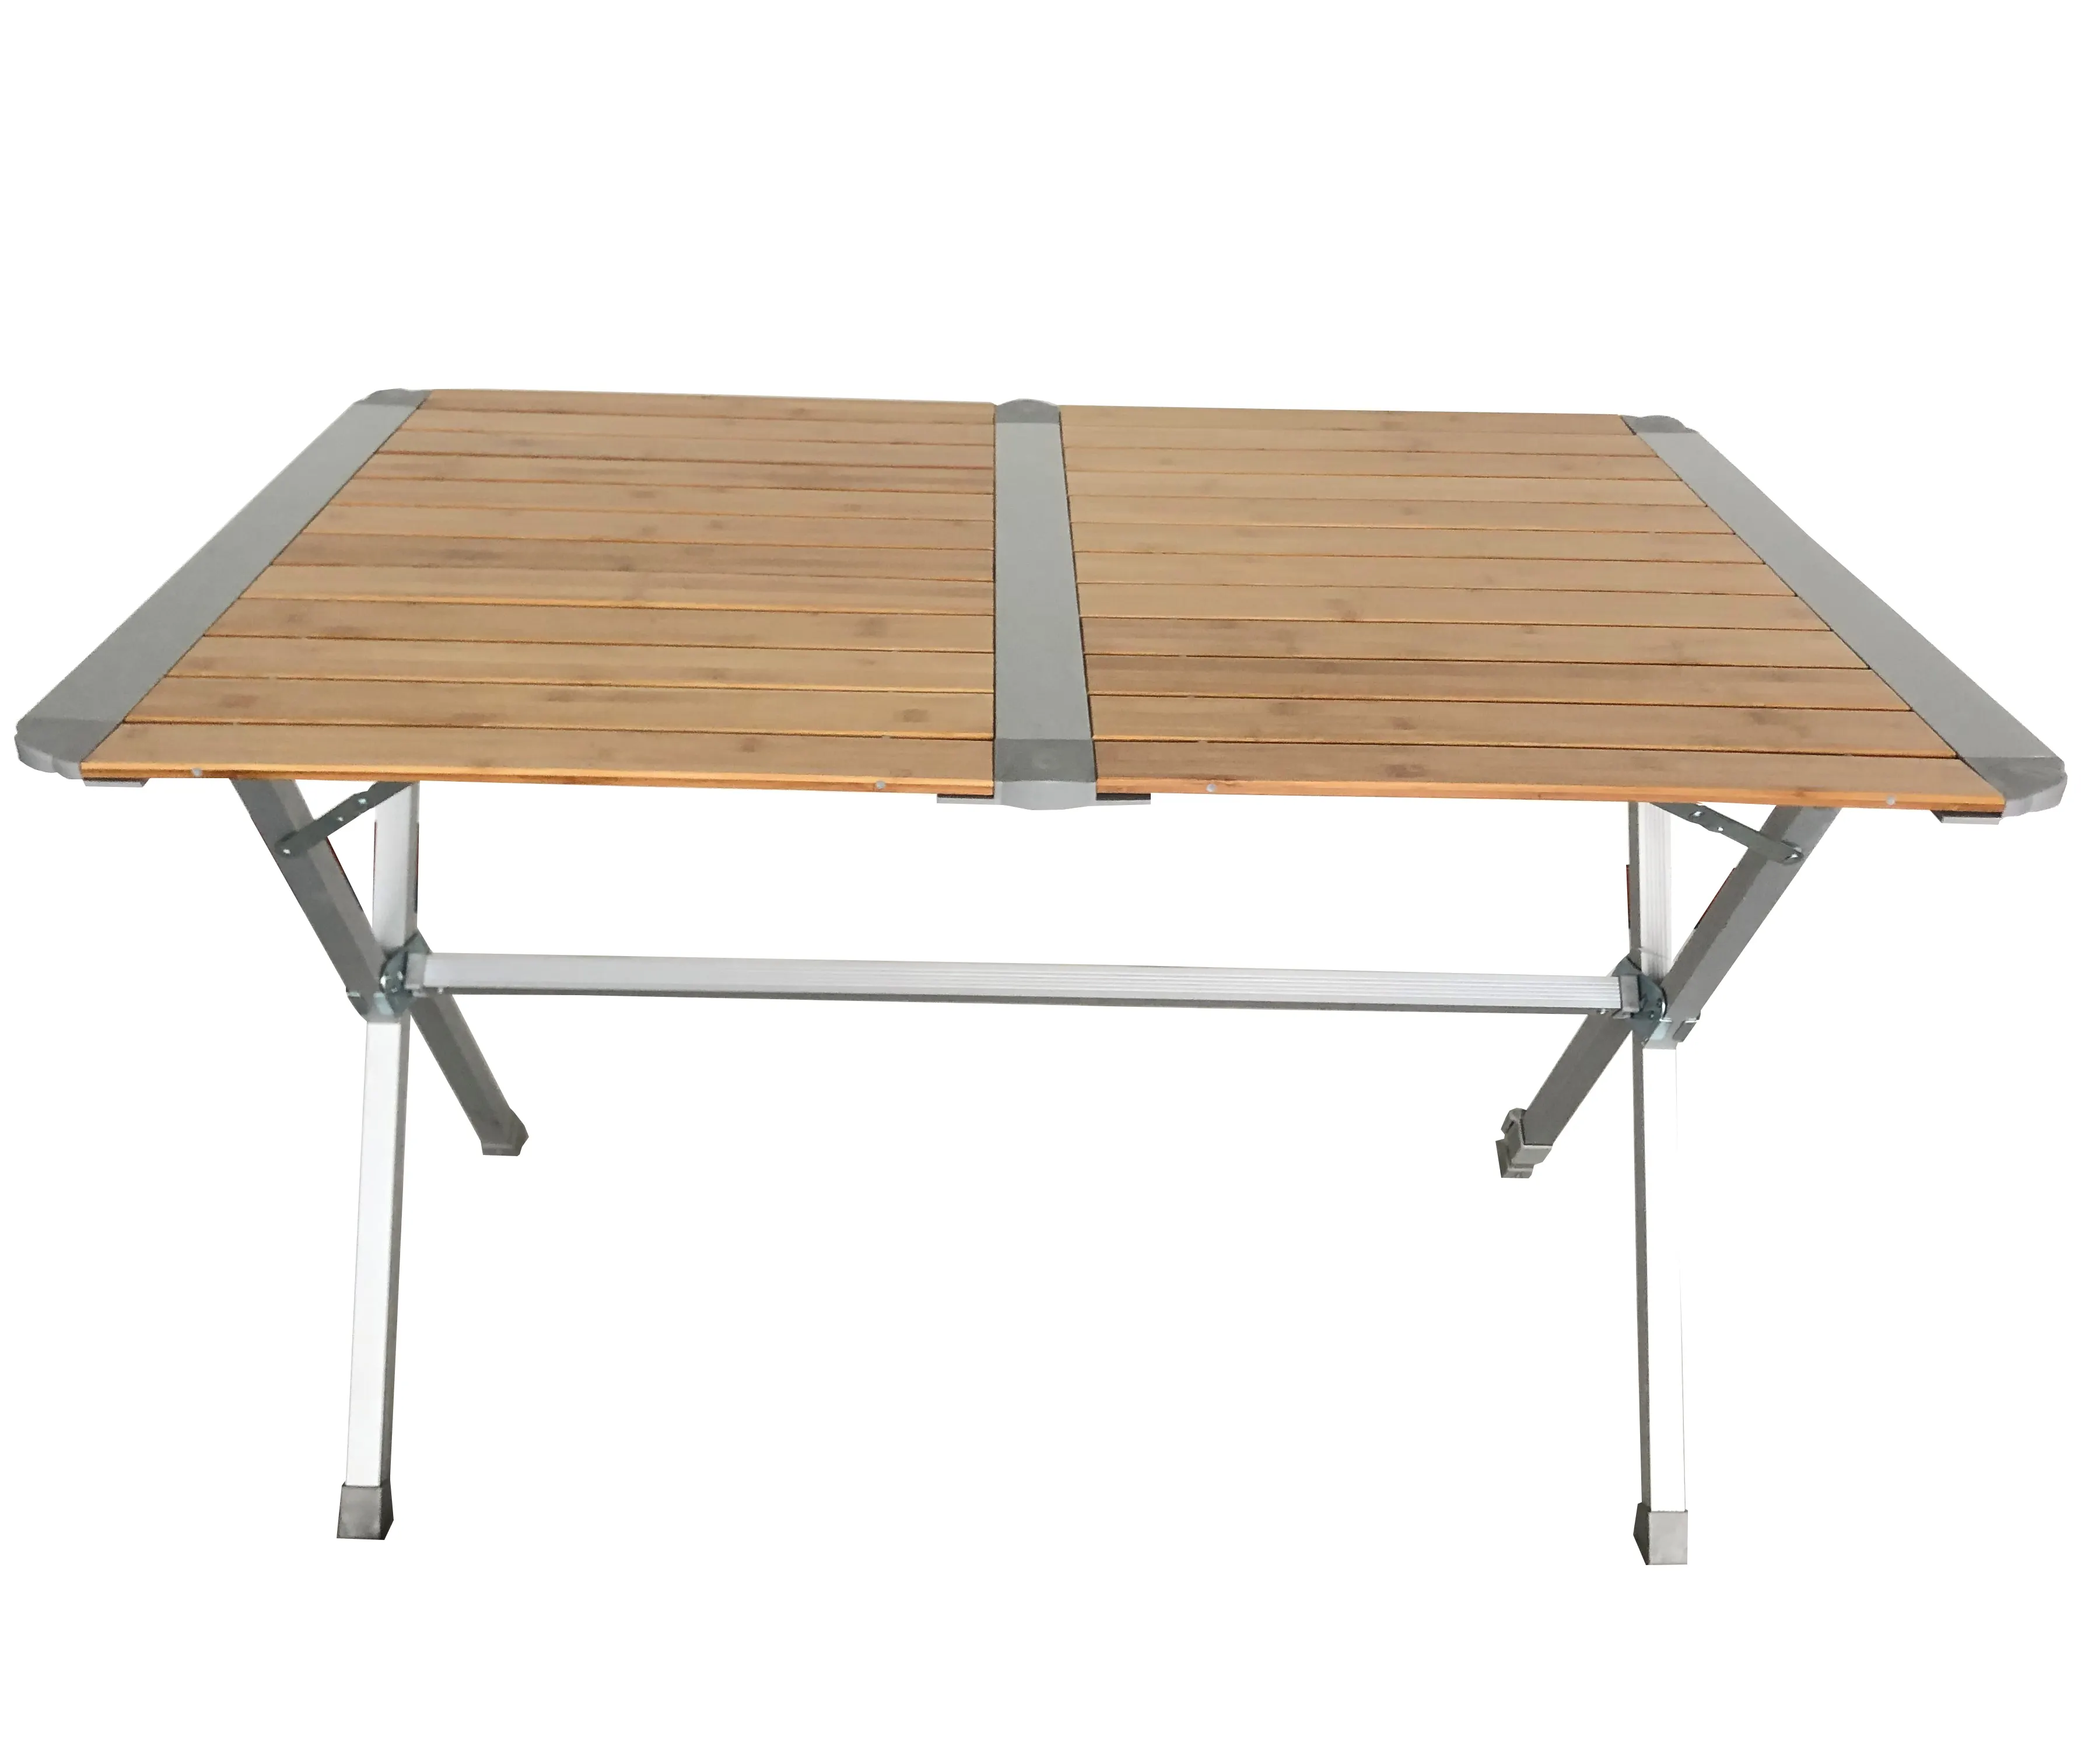 Table de pique-nique en bambou, cadre en aluminium, extérieur, Camping, légère, compact et facile à transporter, meuble de Camping